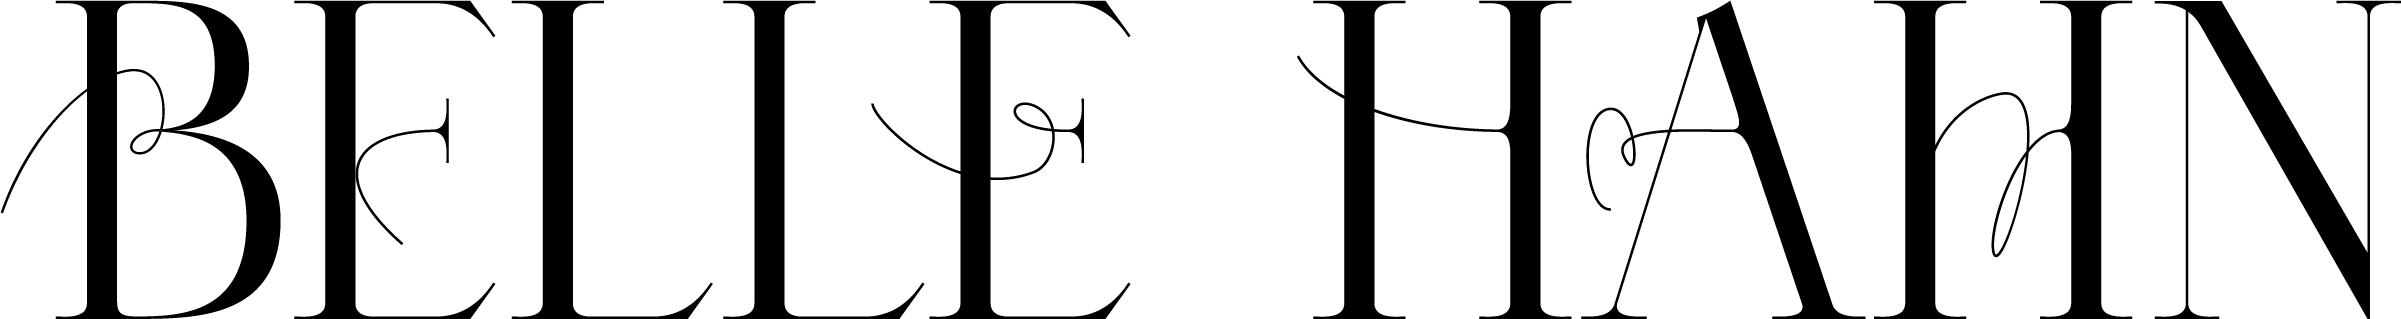 Belle Hahn - Logo